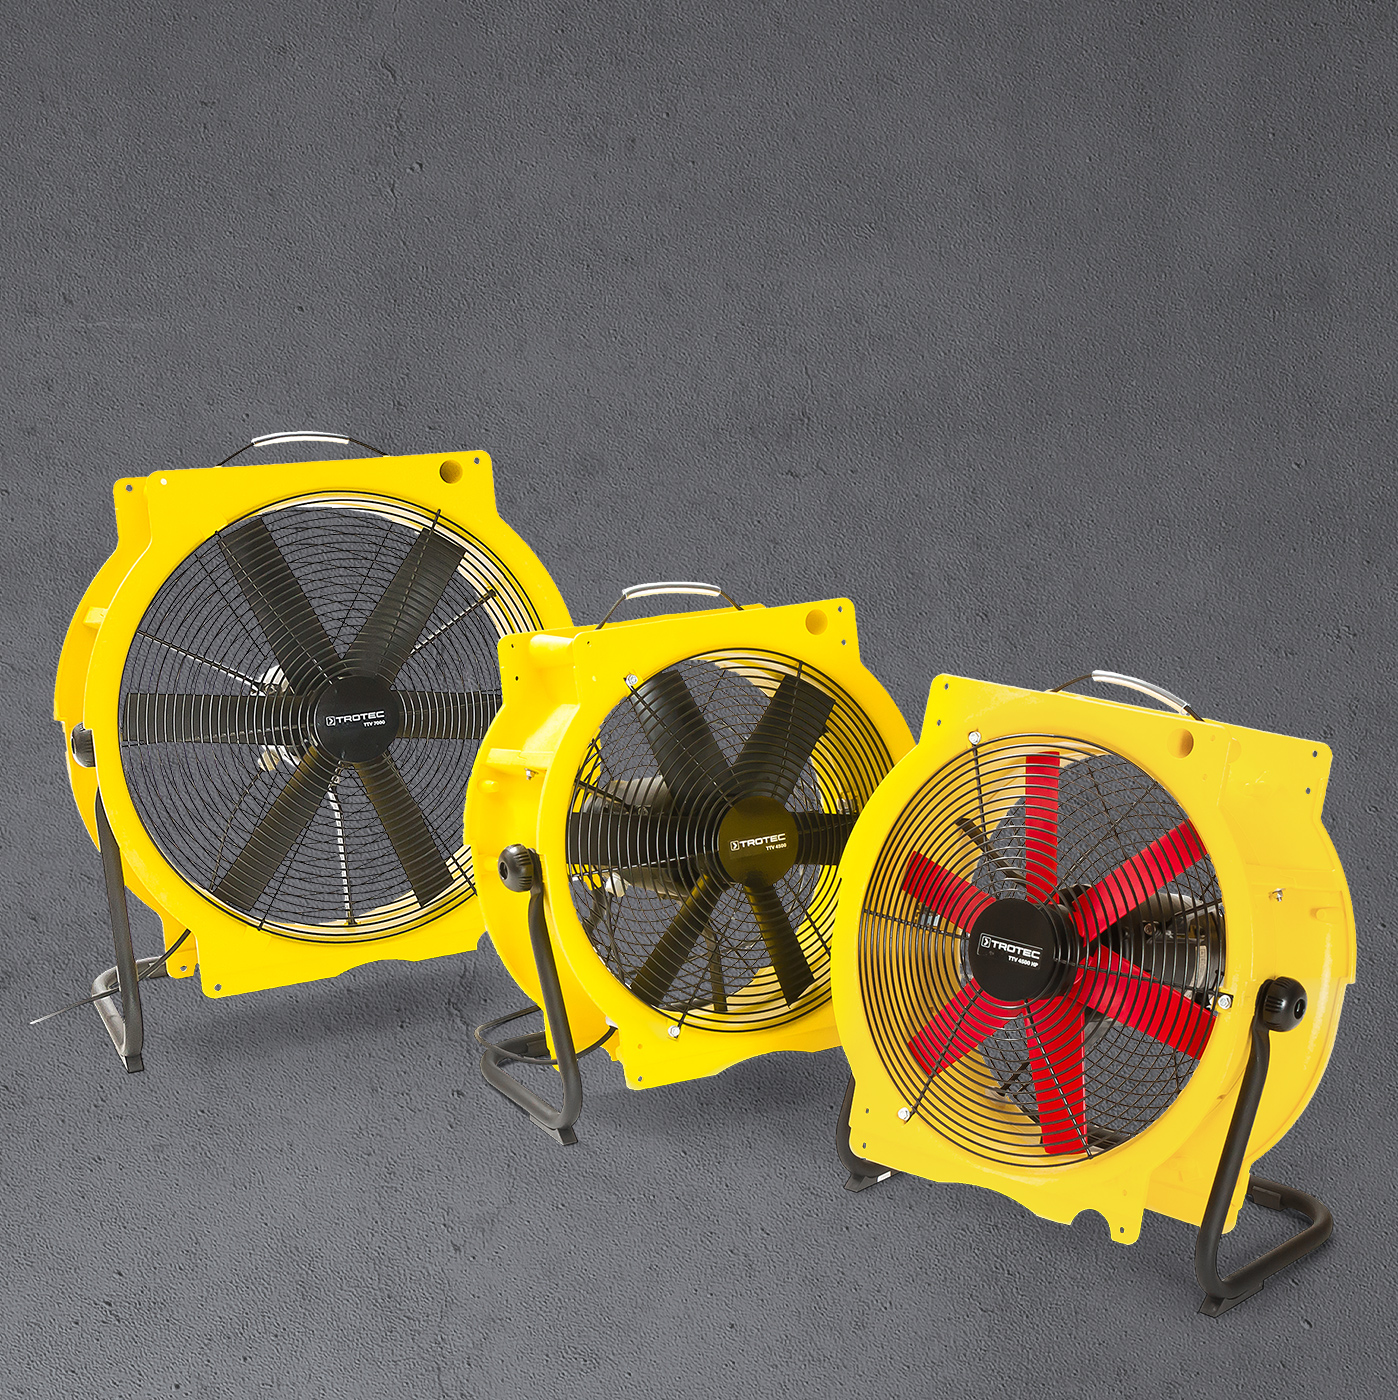 Aksijalni ventilatori serije TTV